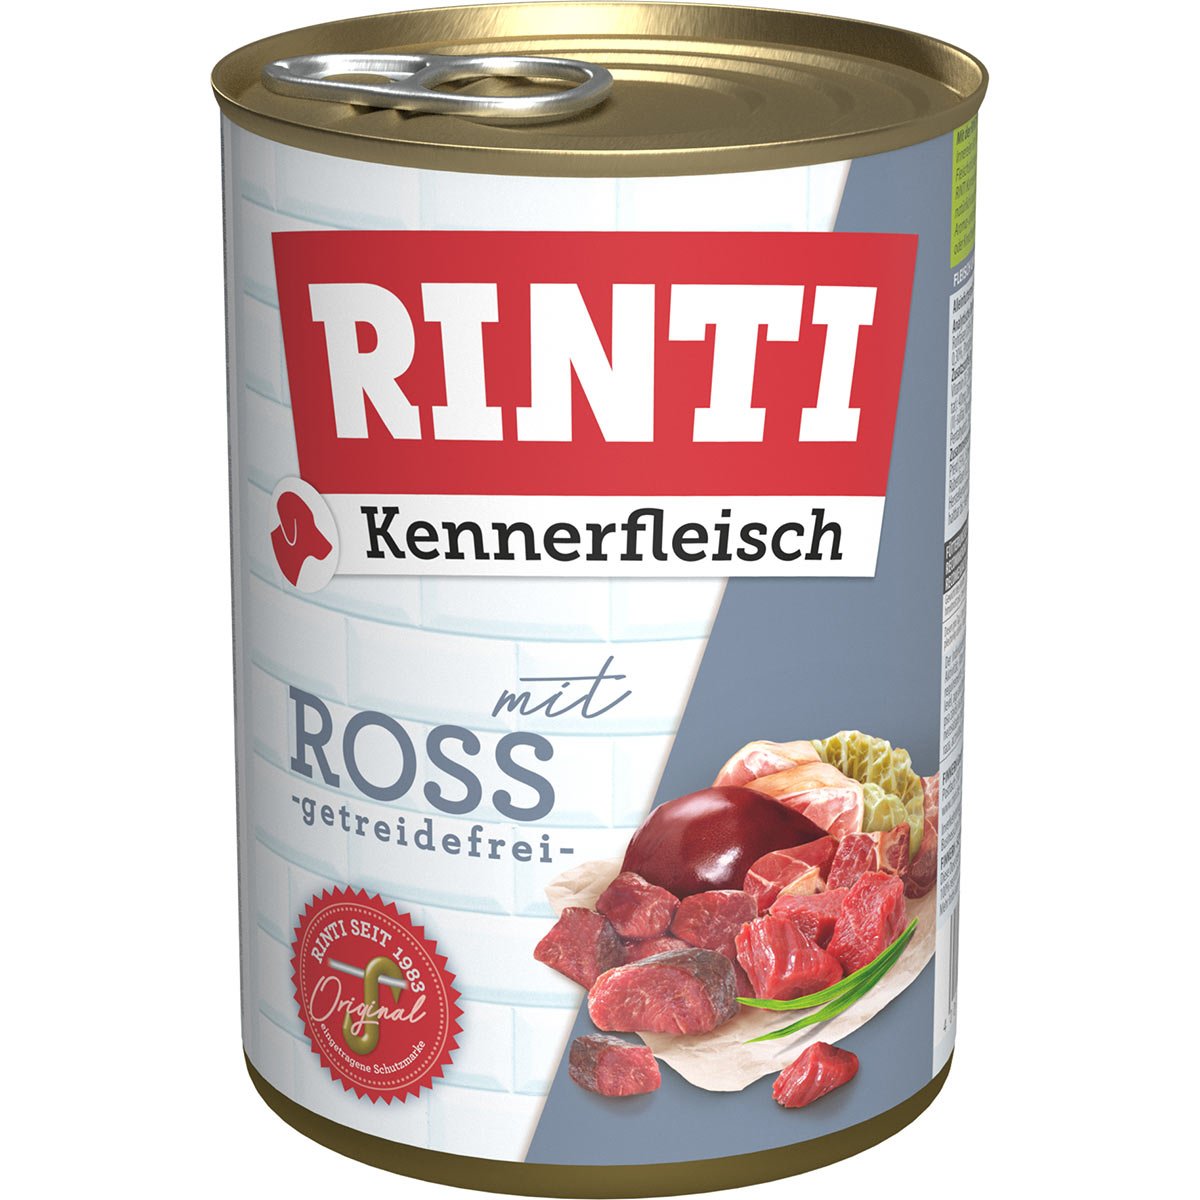 Rinti Kennerfleisch mit Ross 24x400g von Rinti